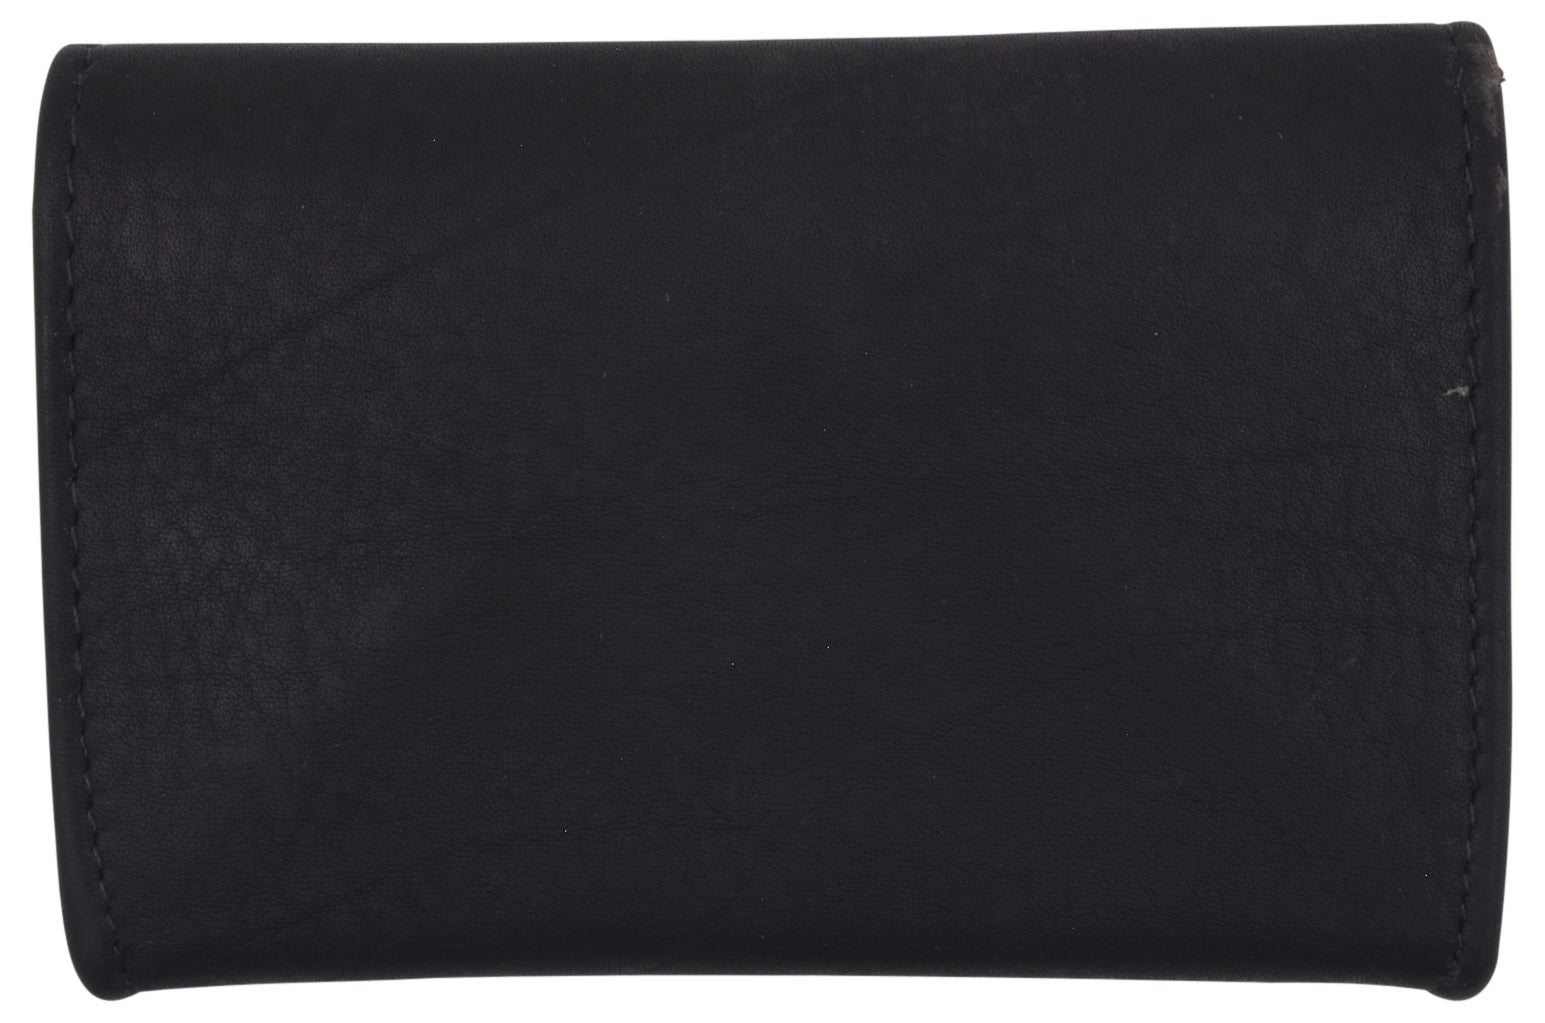 Ladies wallet in XL, genuine leather, black, with wax coating, ha-118 |  Jahn Lederwaren